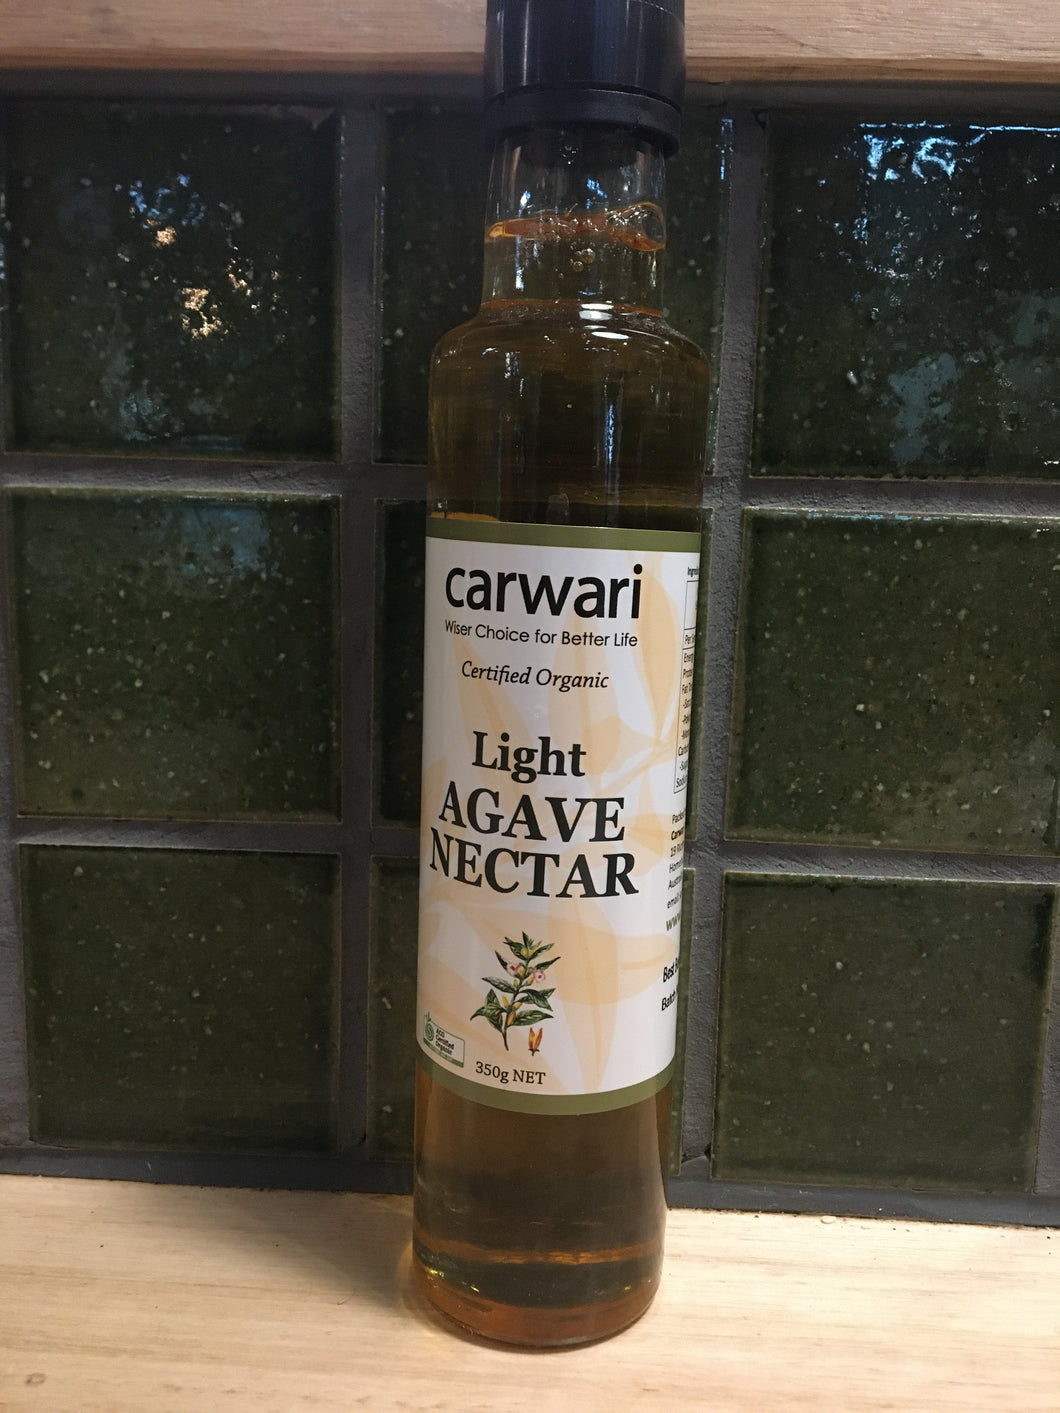 Carwari Light Agave Nectar 350g